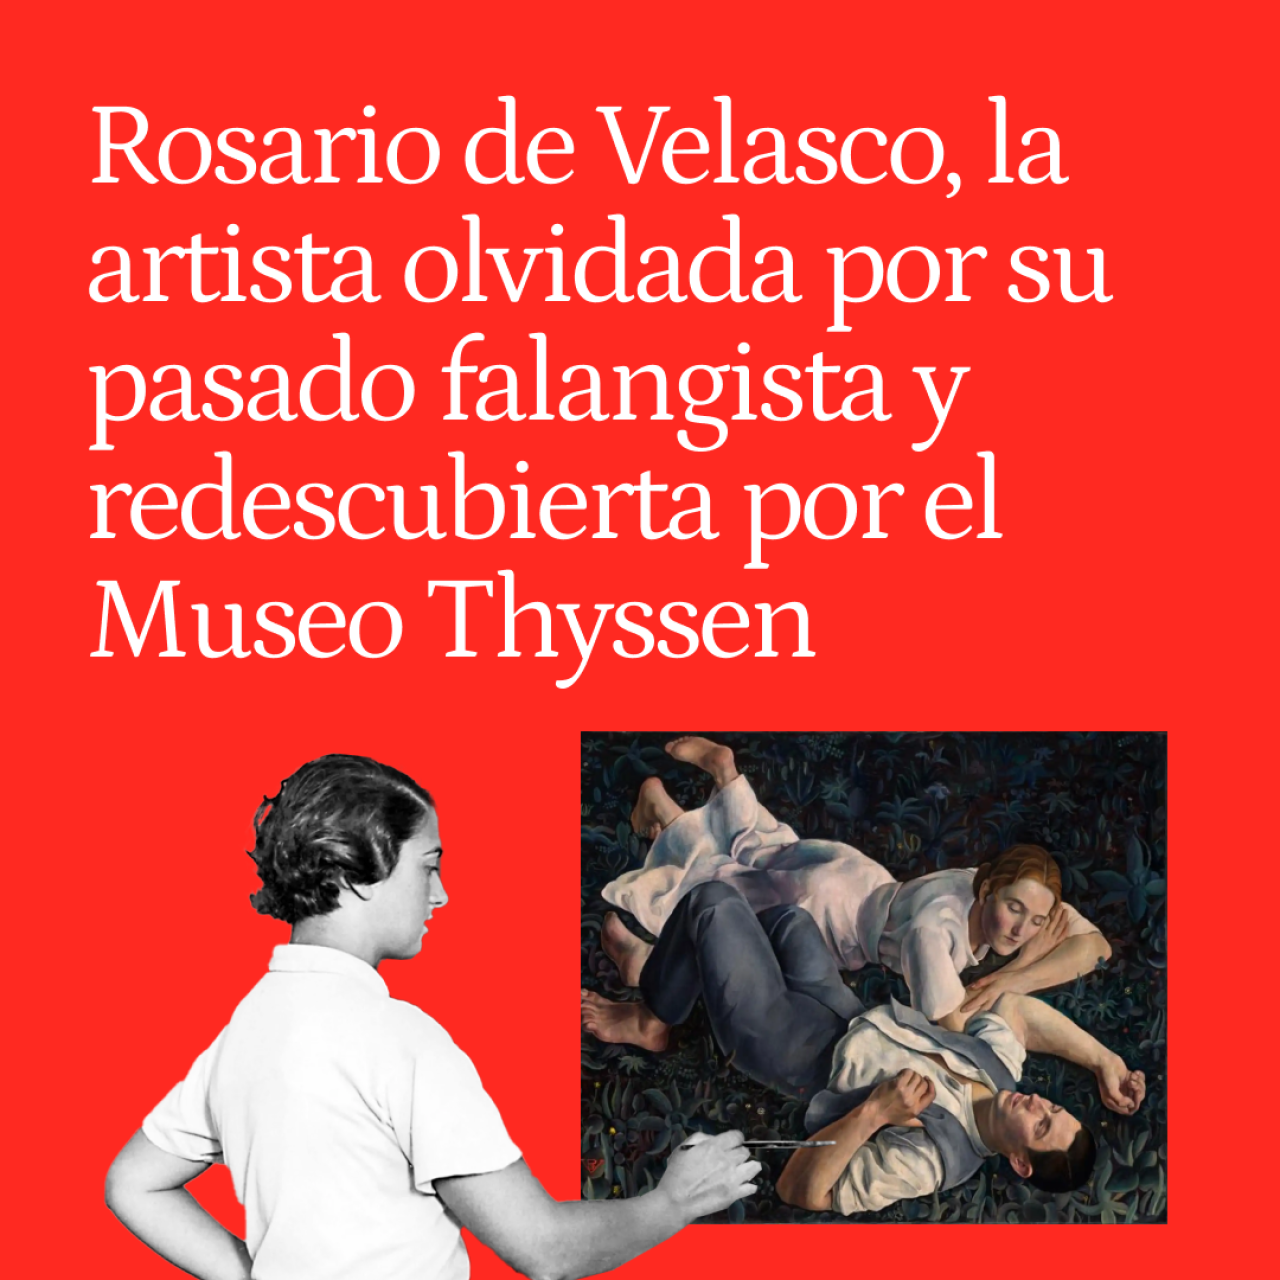 Rosario de Velasco, la artista olvidada por su pasado falangista y redescubierta por el Museo Thyssen